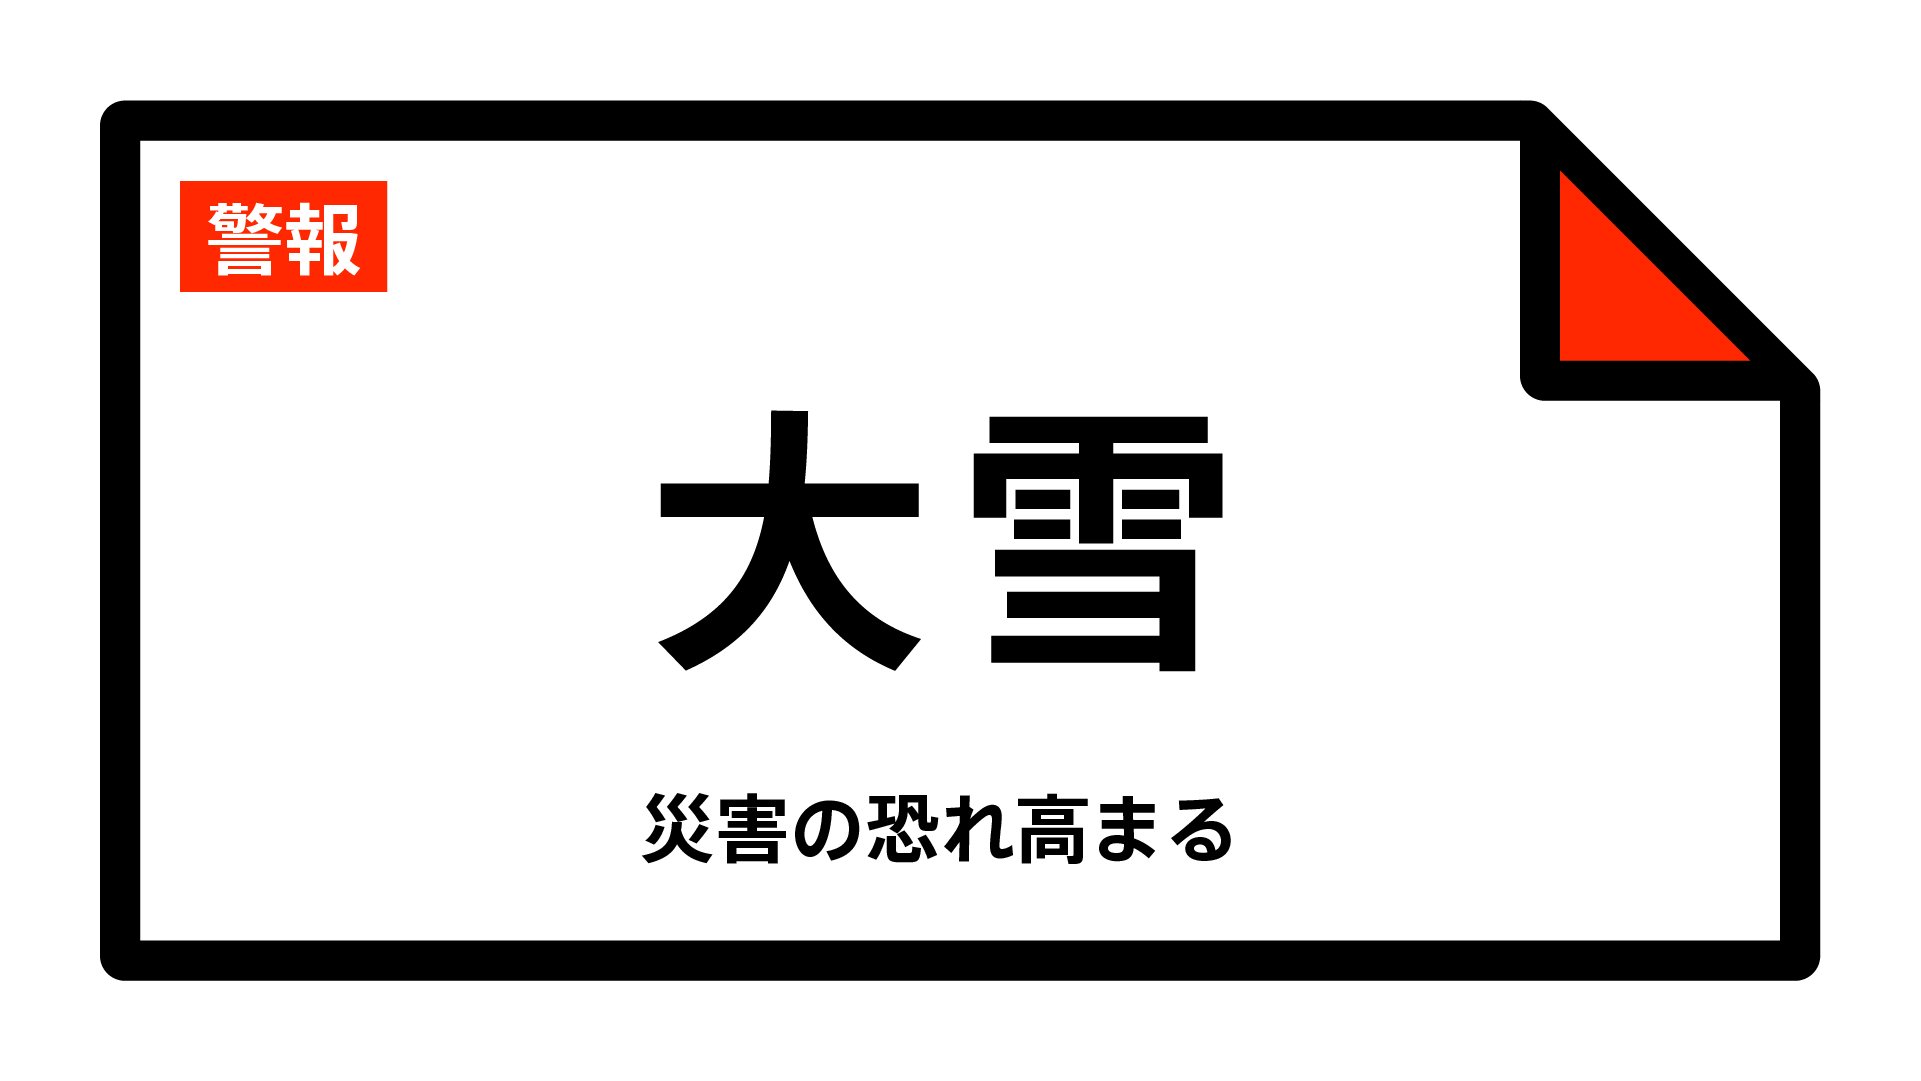 【大雪警報】長野県・茅野市、富士見町、原村に発表